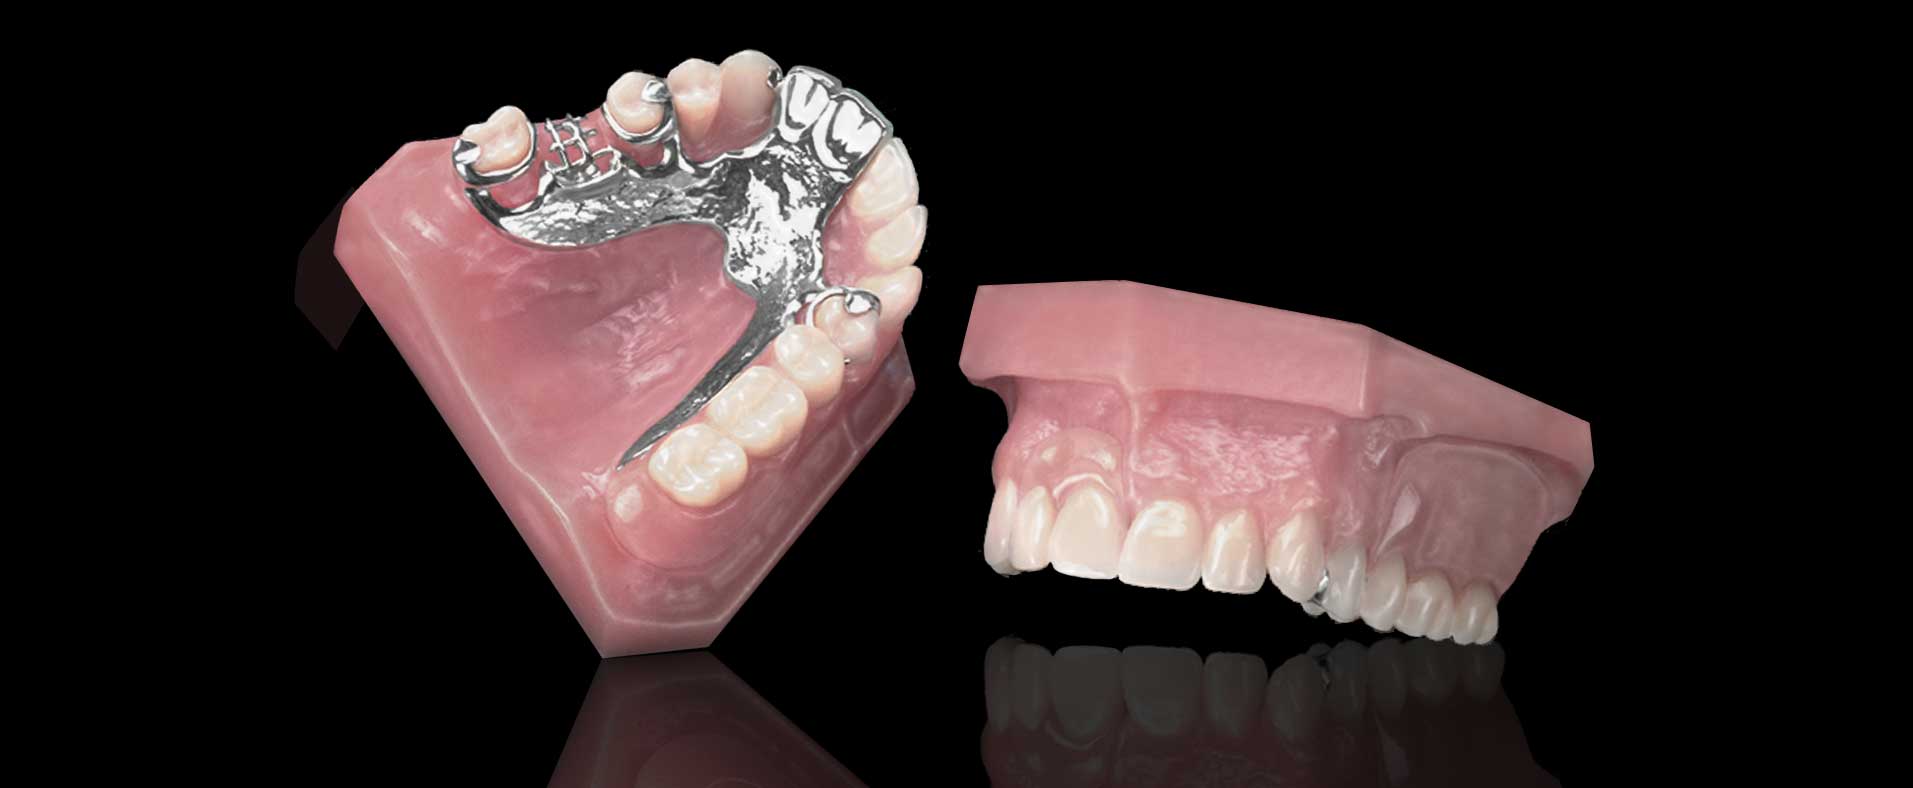 Partial Cast Dentures